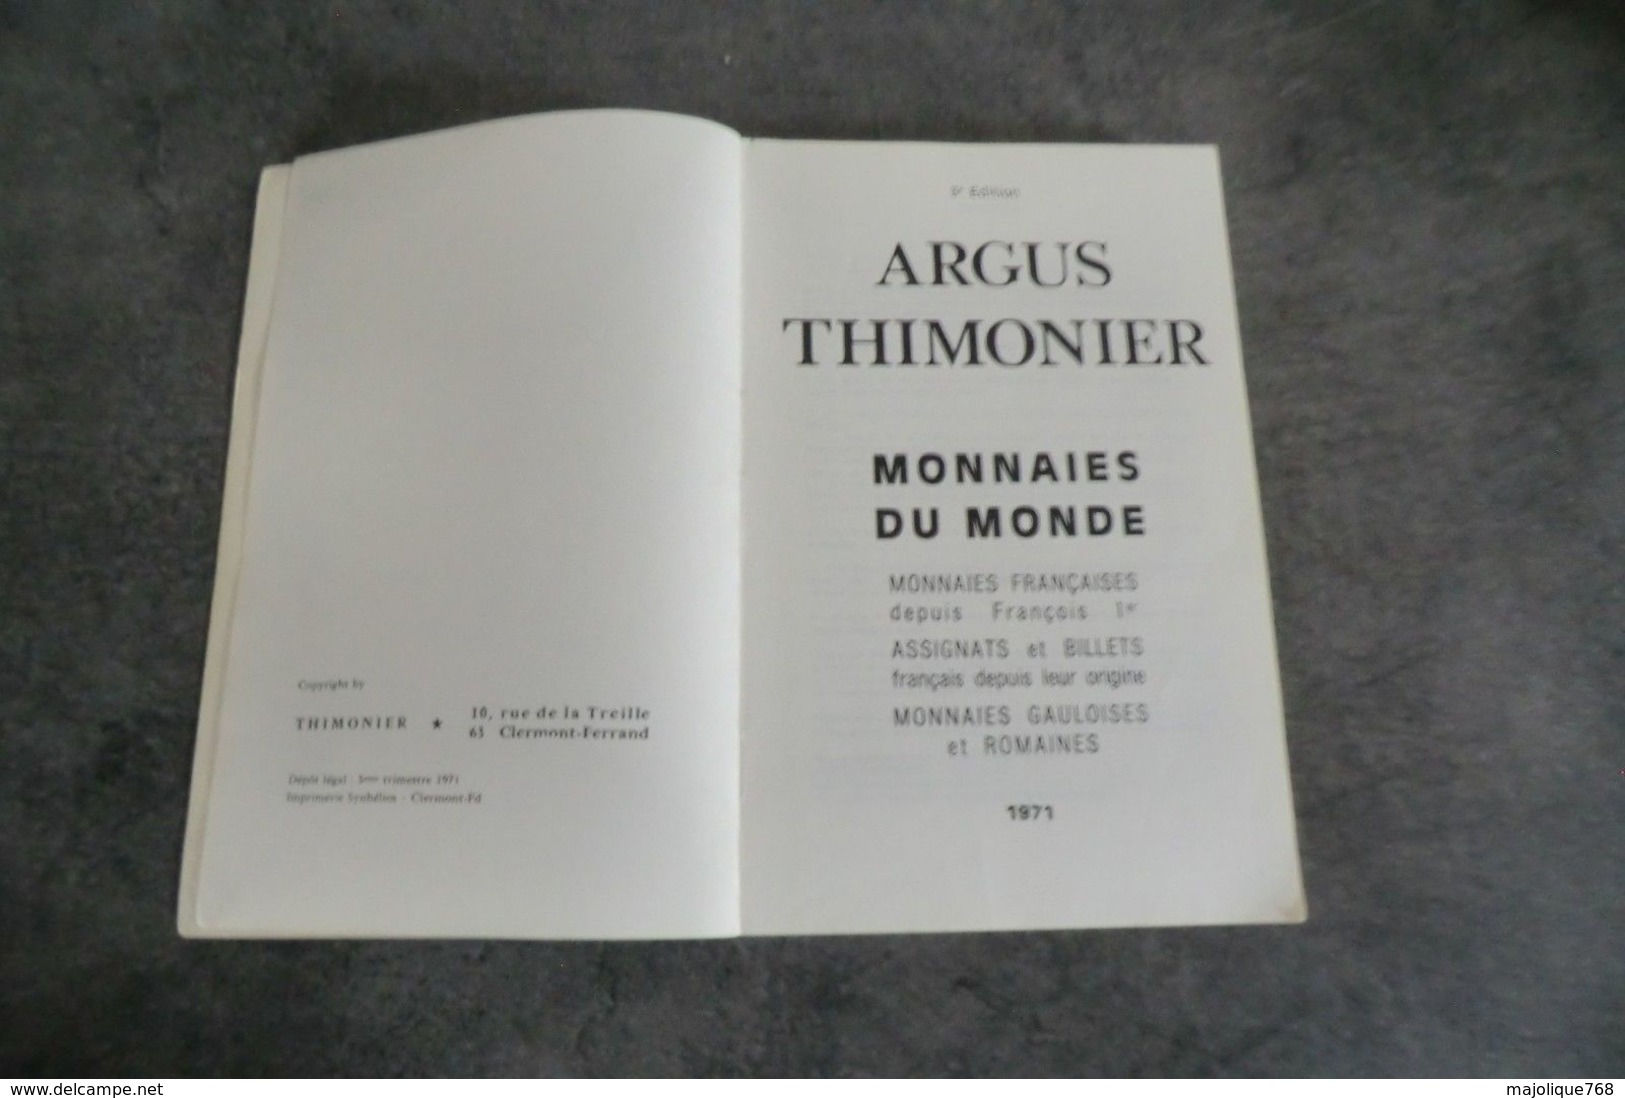 Argus Thimonier Monnaies Du Monde - 3° édition 1971 - - Literatur & Software